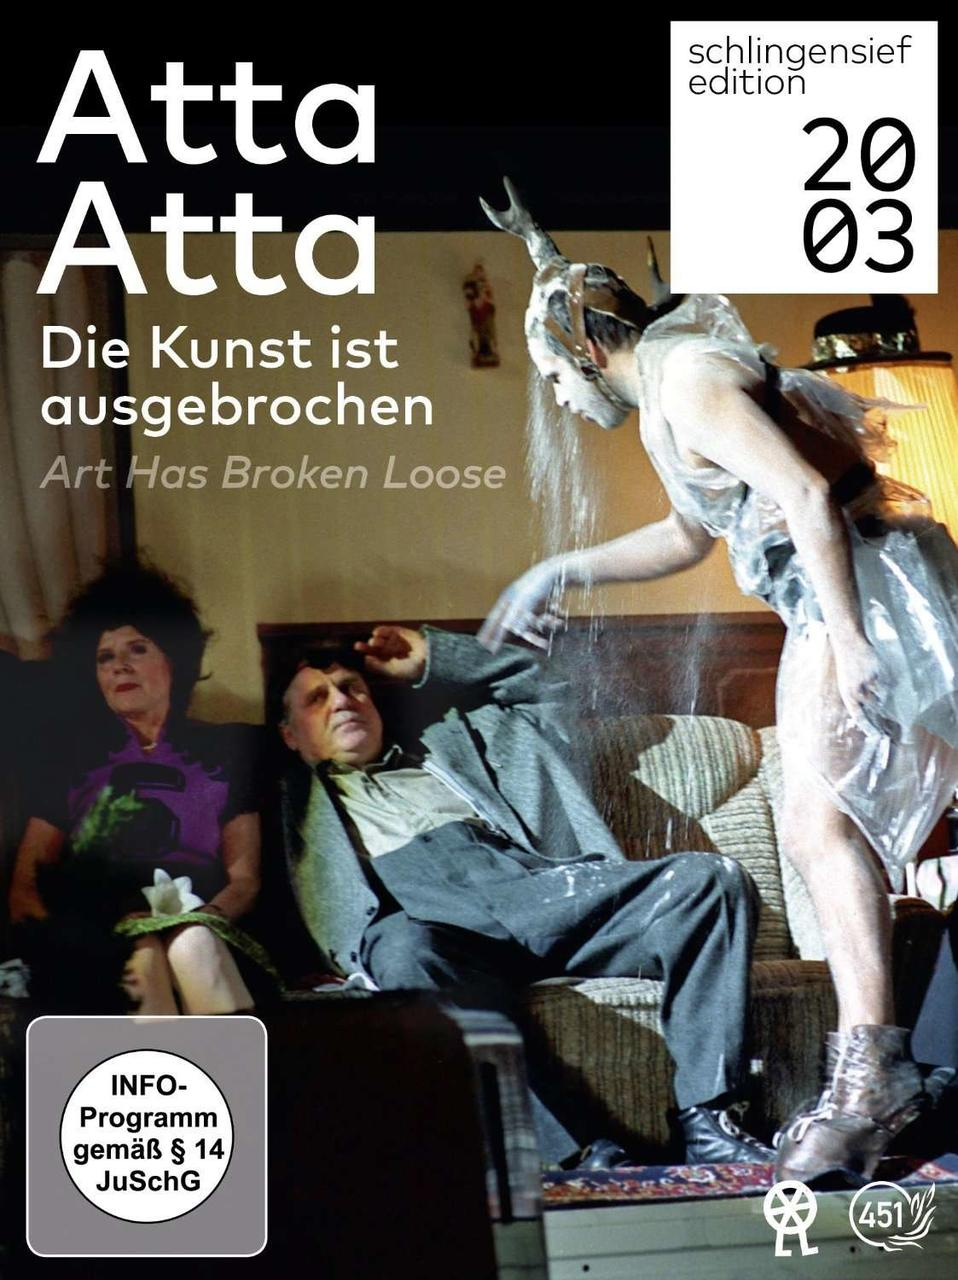 ausgebrochen ist / broken Kunst - Art loose Die Atta Atta has DVD